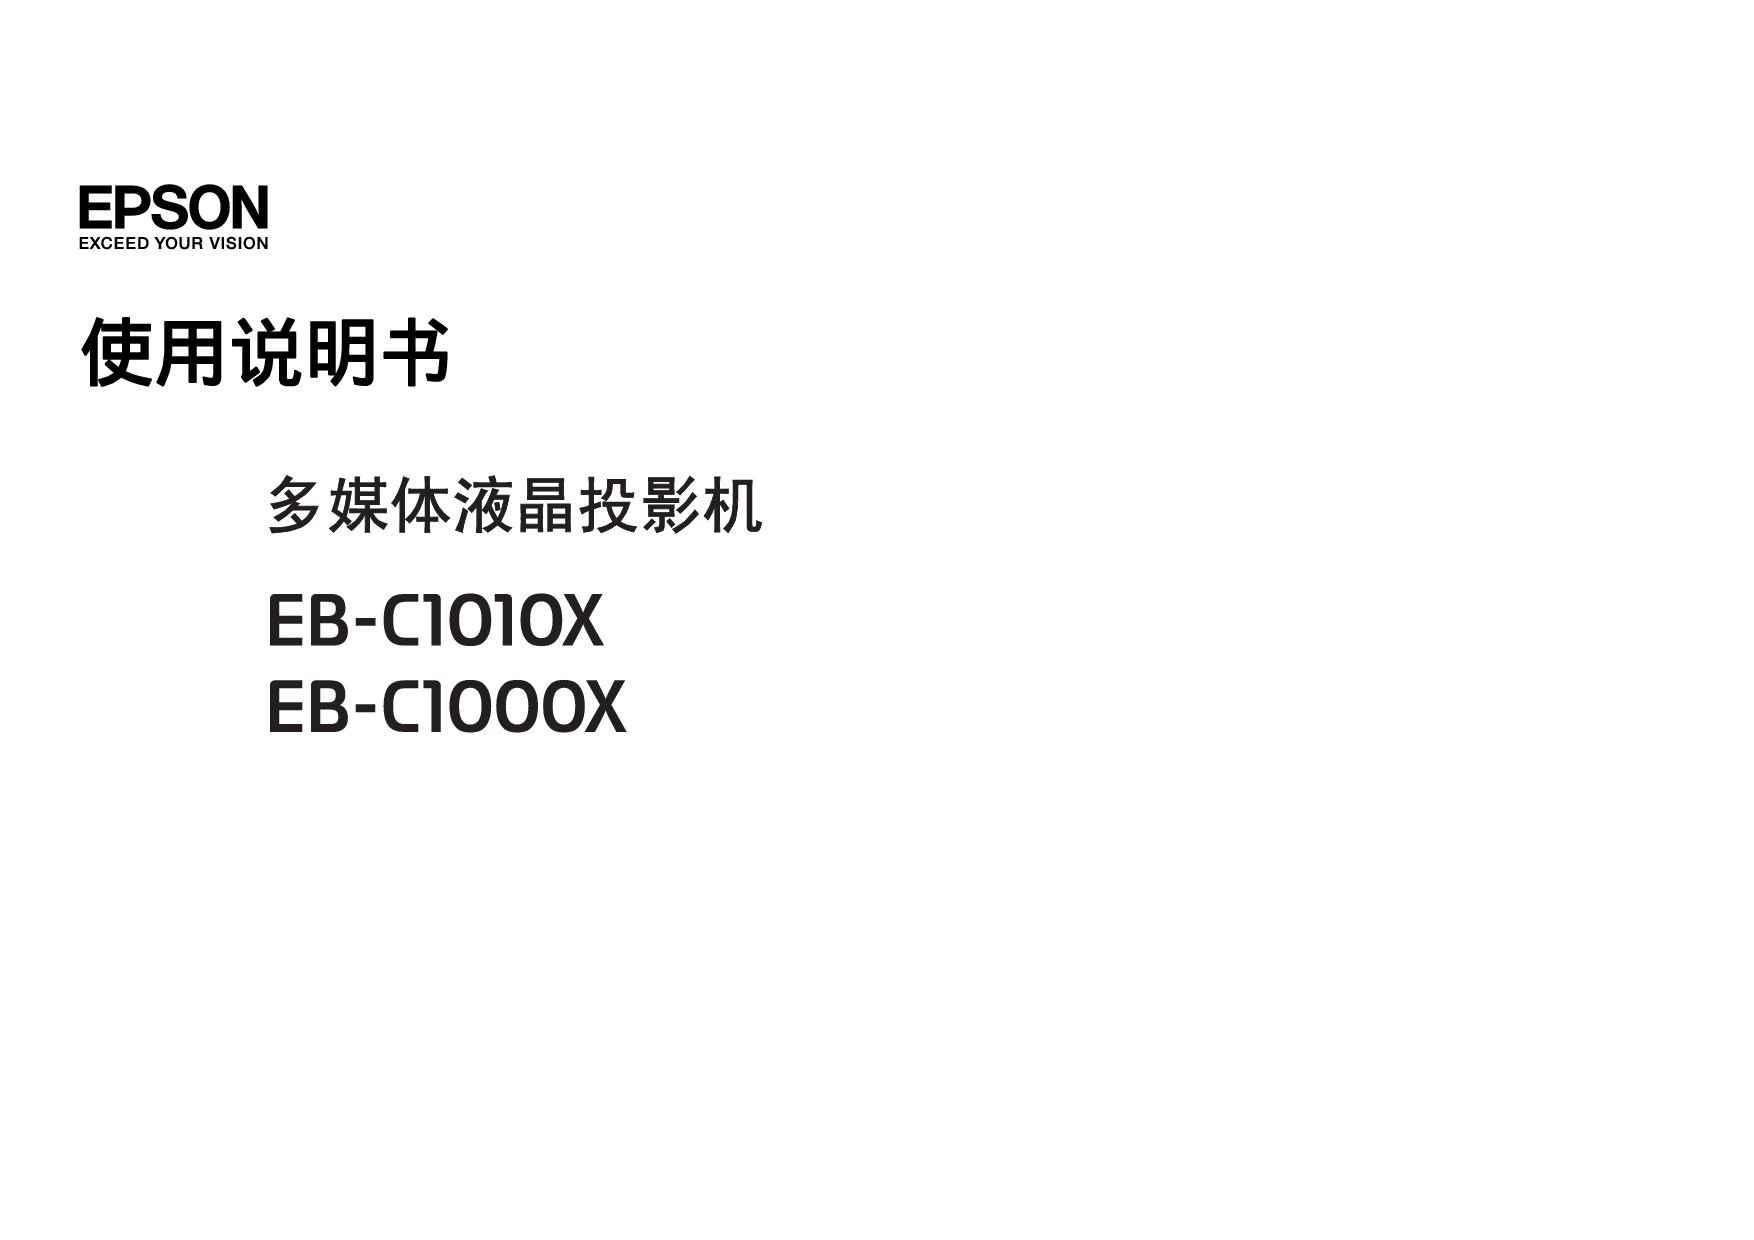 爱普生 Epson EB-C1000X 使用说明书 封面